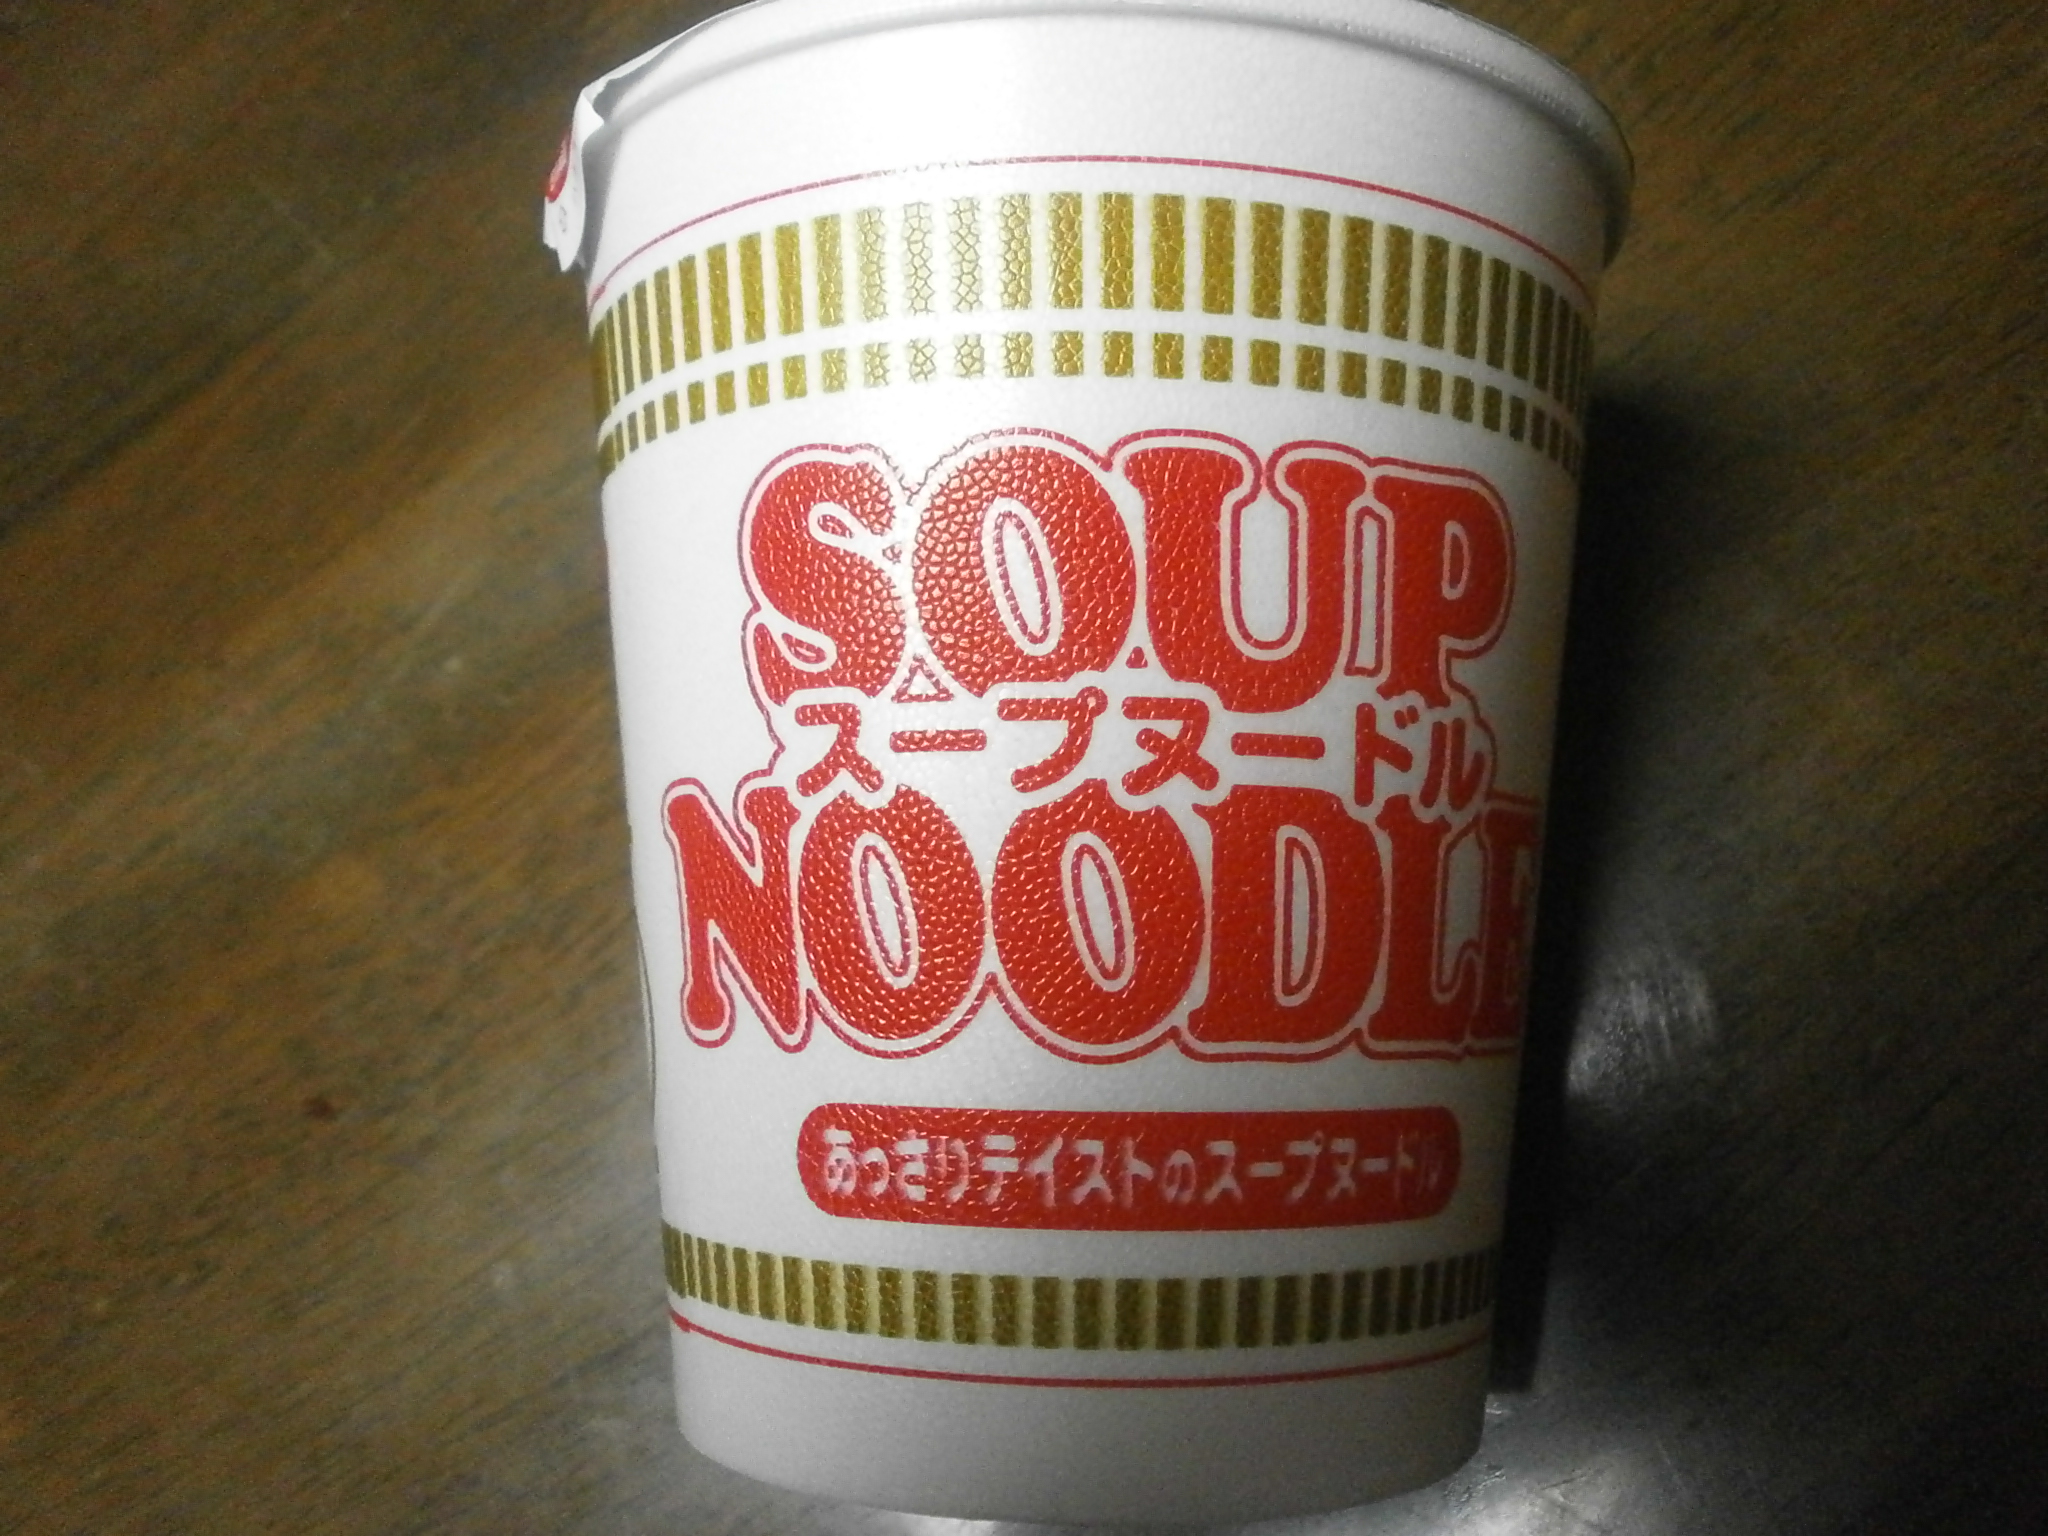 Che ad alto contenuto calorico? Noodle soup? Kitsune udon?